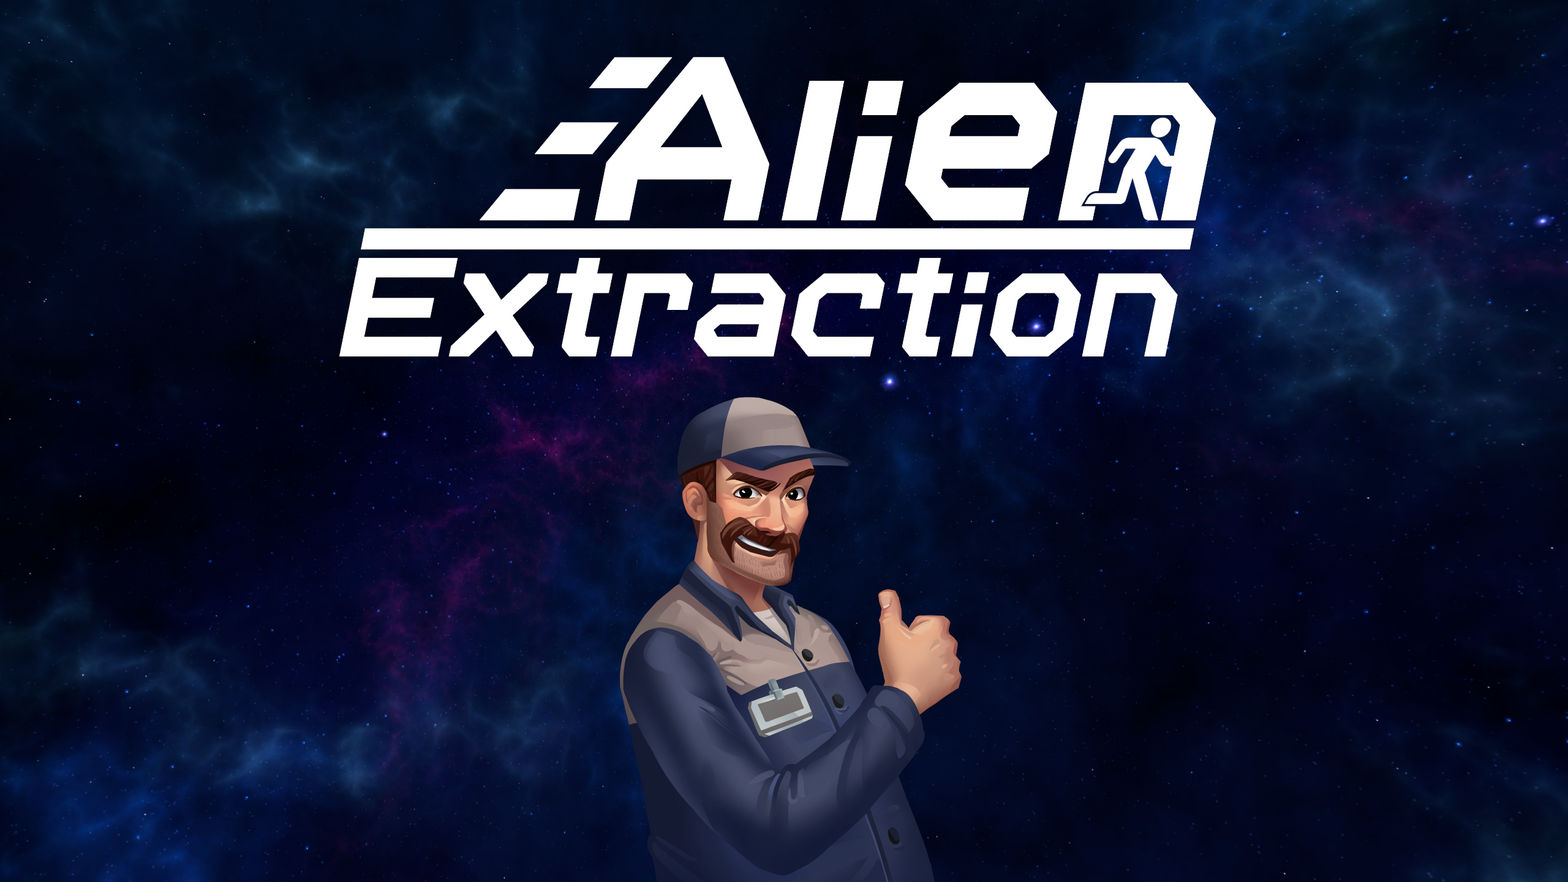 Alien Extraction Demo